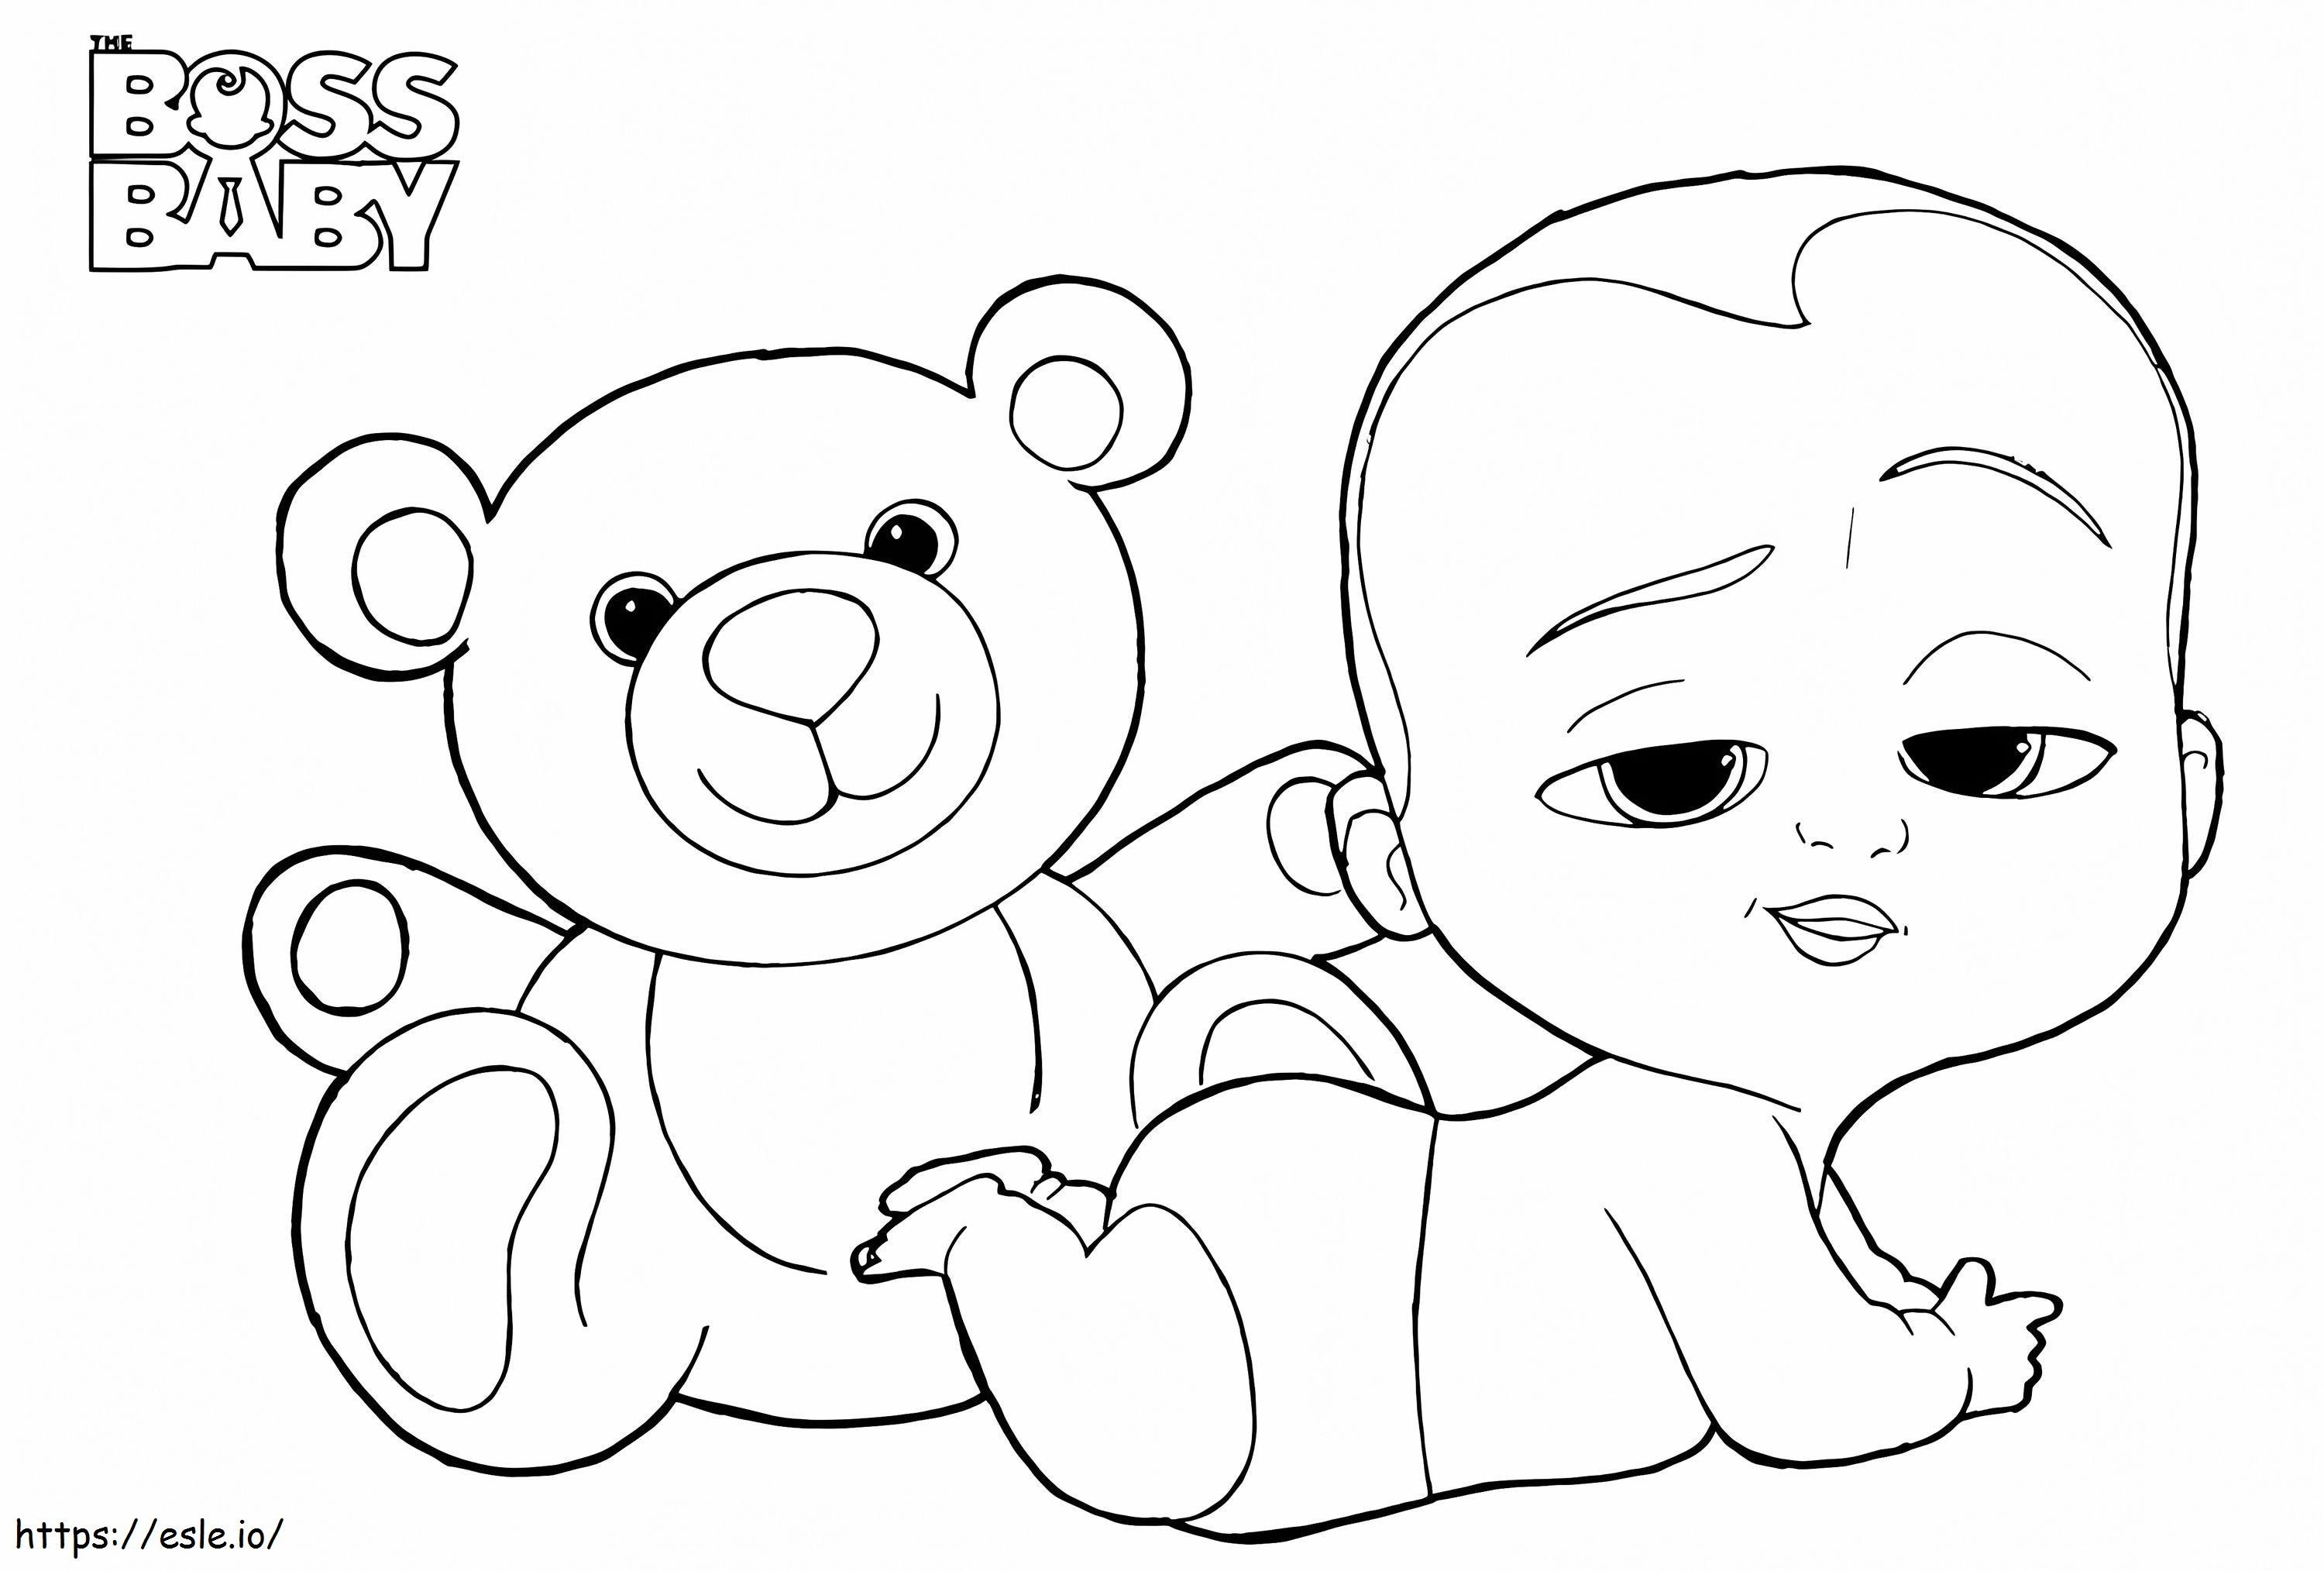 _Boss Baby és Teddy A4 kifestő